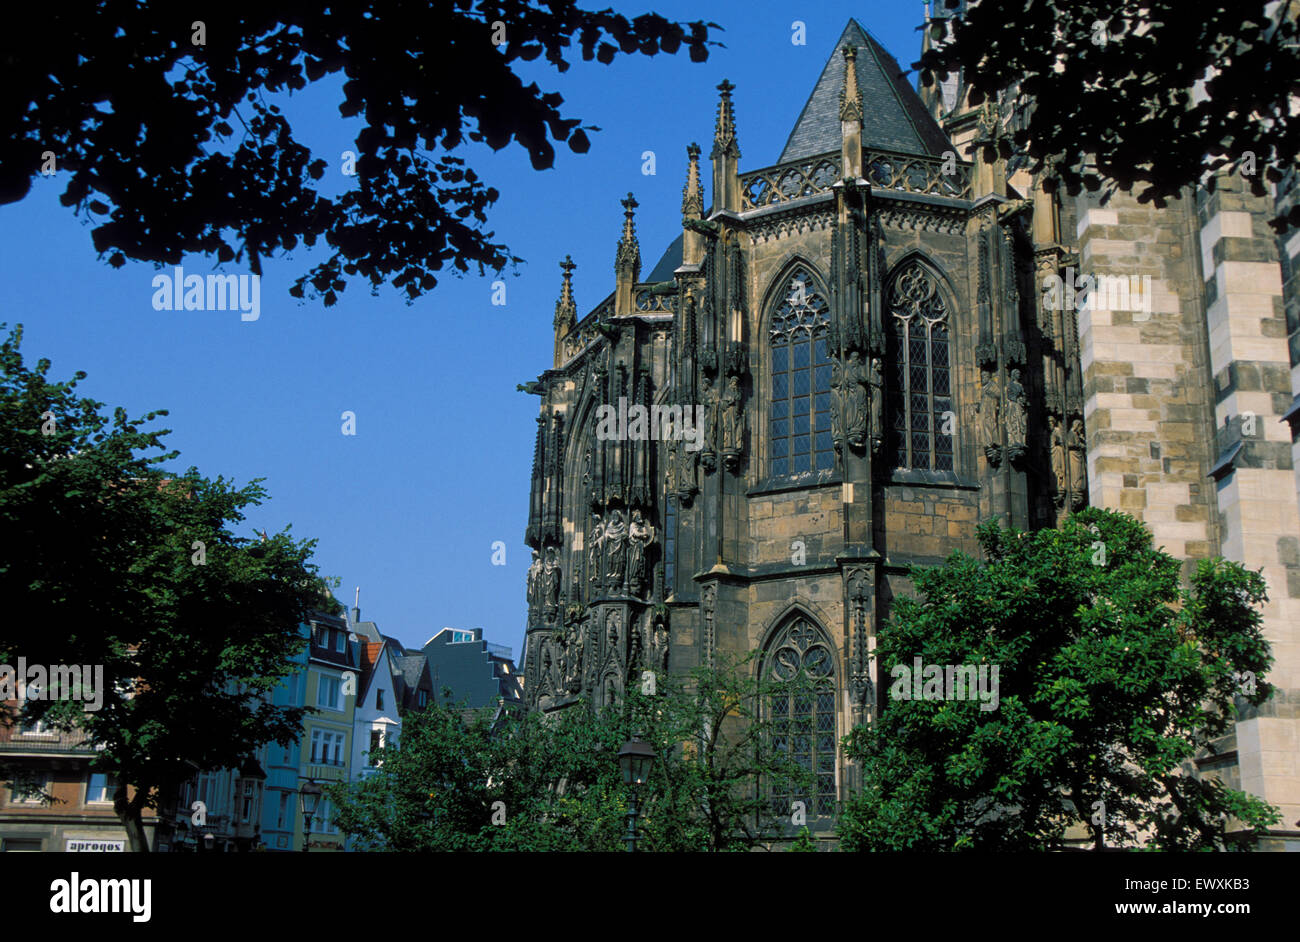 DEU, Germany, Aachen, the cathedral   DEU, Deutschland, Aachen, der Dom. Stock Photo